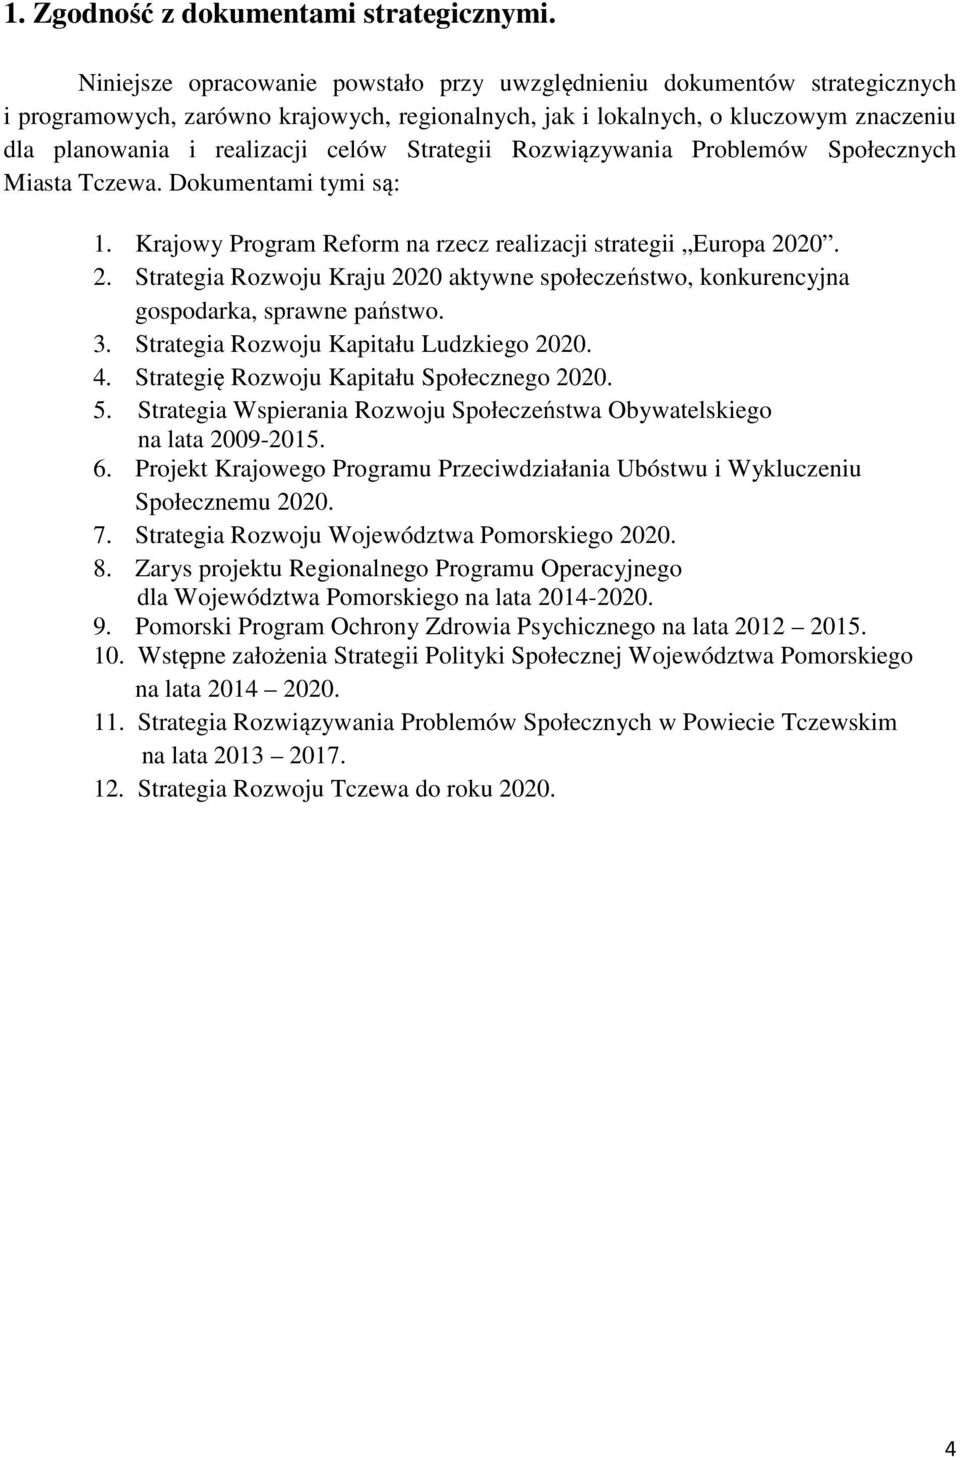 Strategii Rozwiązywania Problemów Społecznych Miasta Tczewa. Dokumentami tymi są: 1. Krajowy Program Reform na rzecz realizacji strategii Europa 20